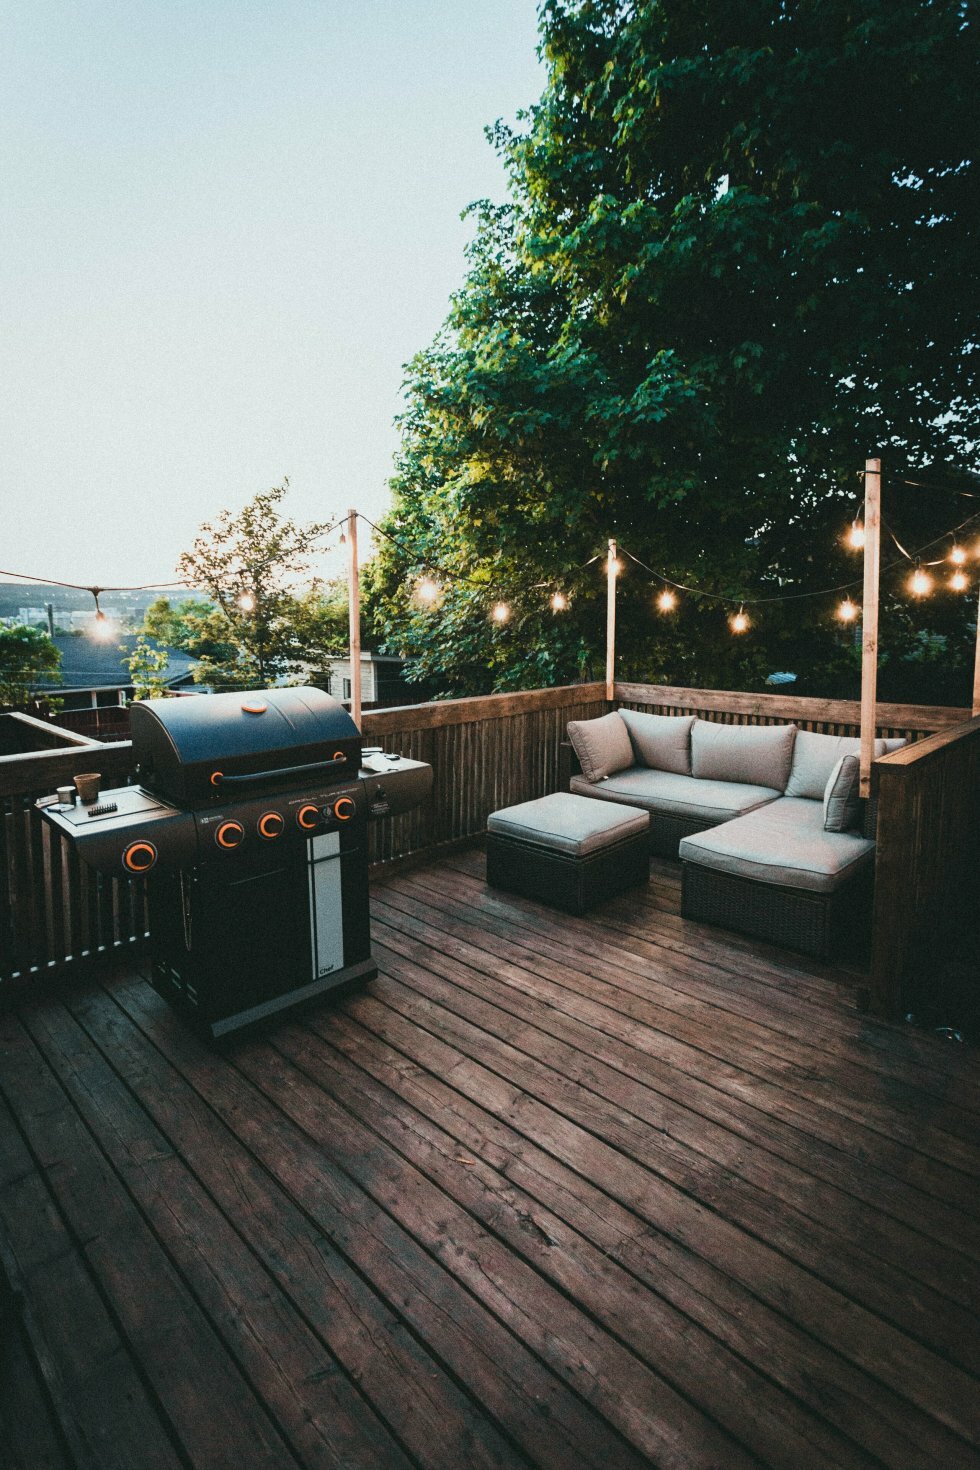 Indret din terrasse med god stil